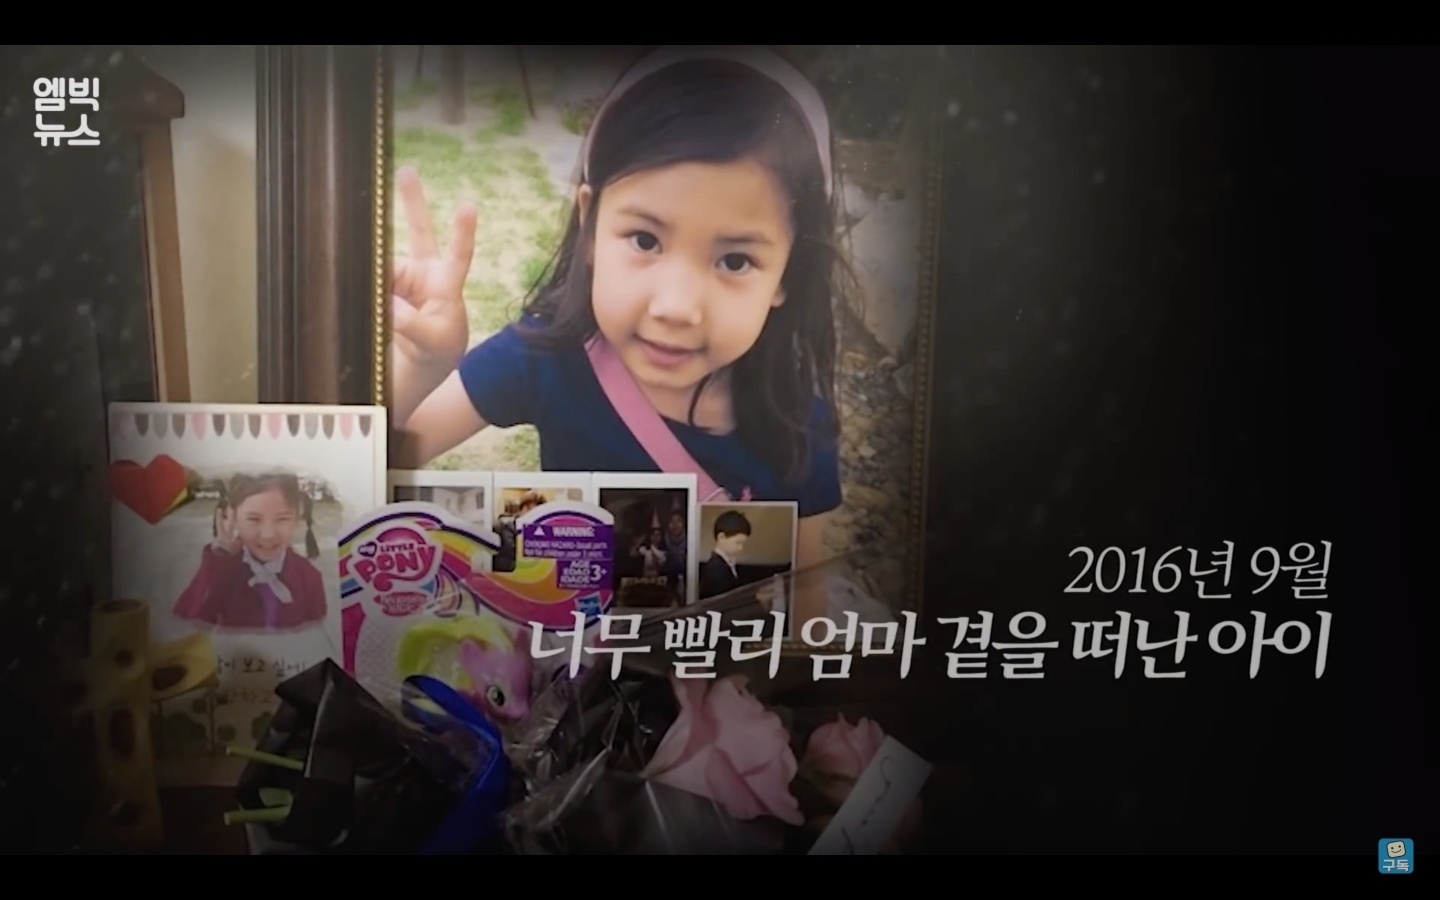 用 VR 和病逝愛女重逢！韓國節目打造虛擬實境，幫助一位母親走出傷痛，感動百萬網友